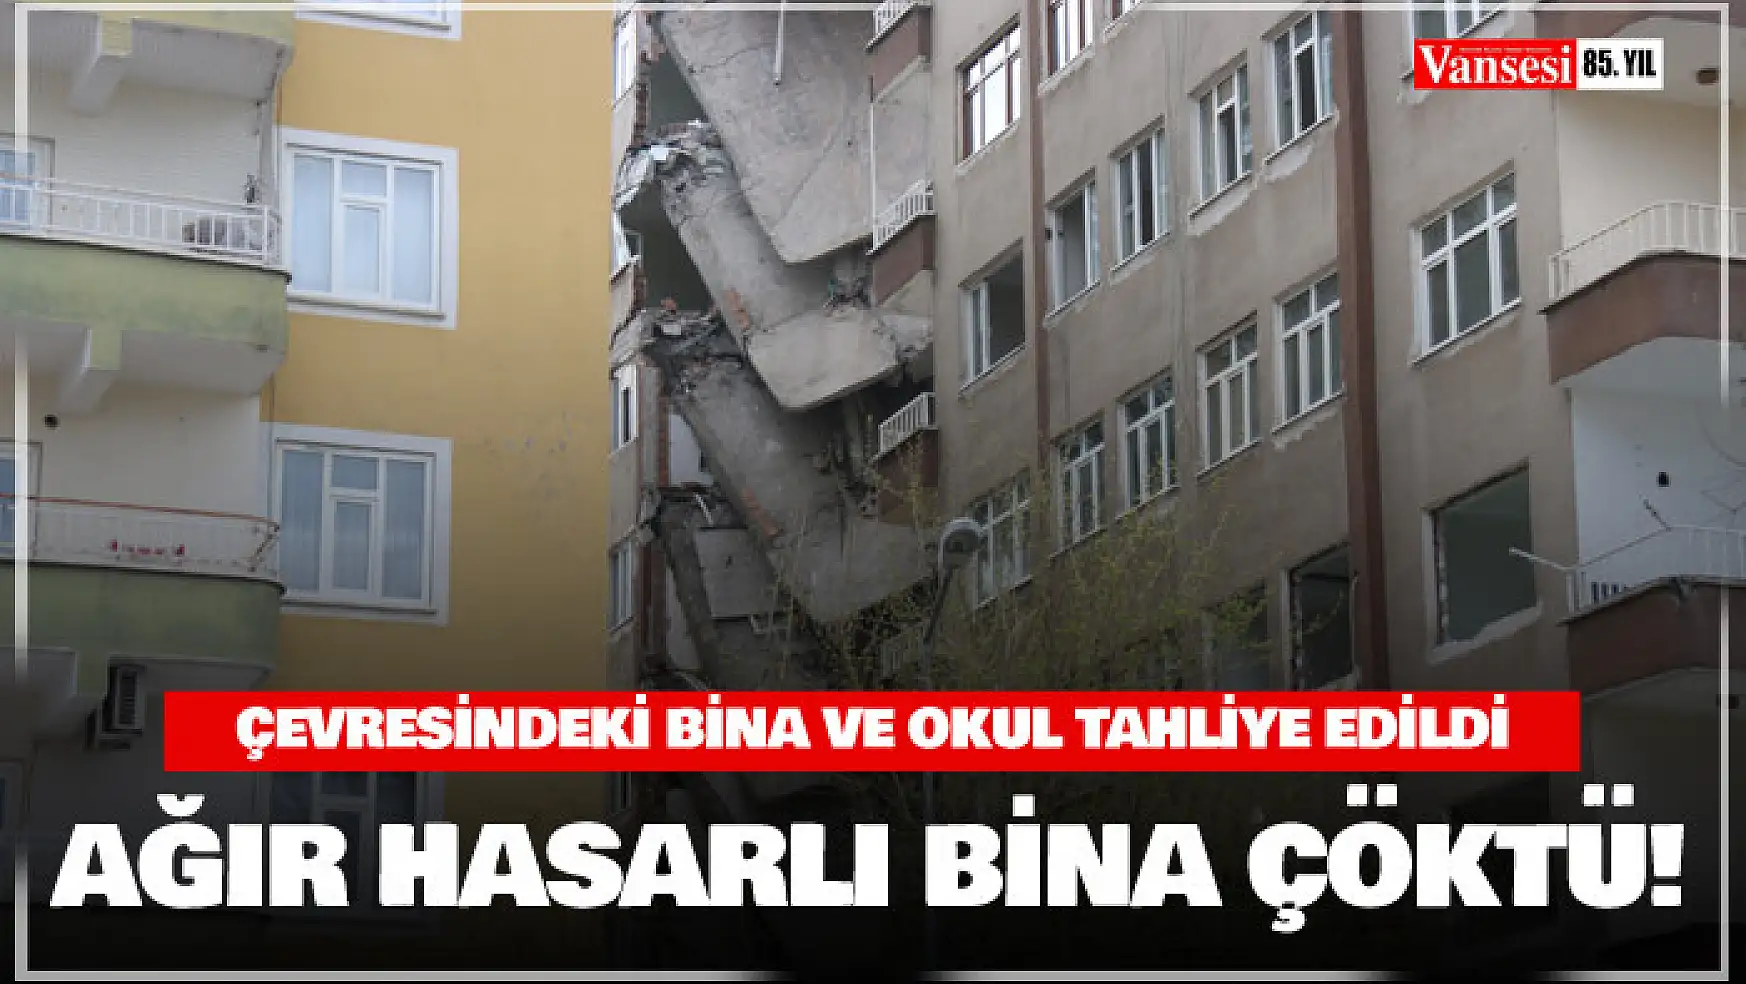 Diyarbakır'da ağır hasarlı bina çöktü, çevresindeki bina ve okul tahliye edildi